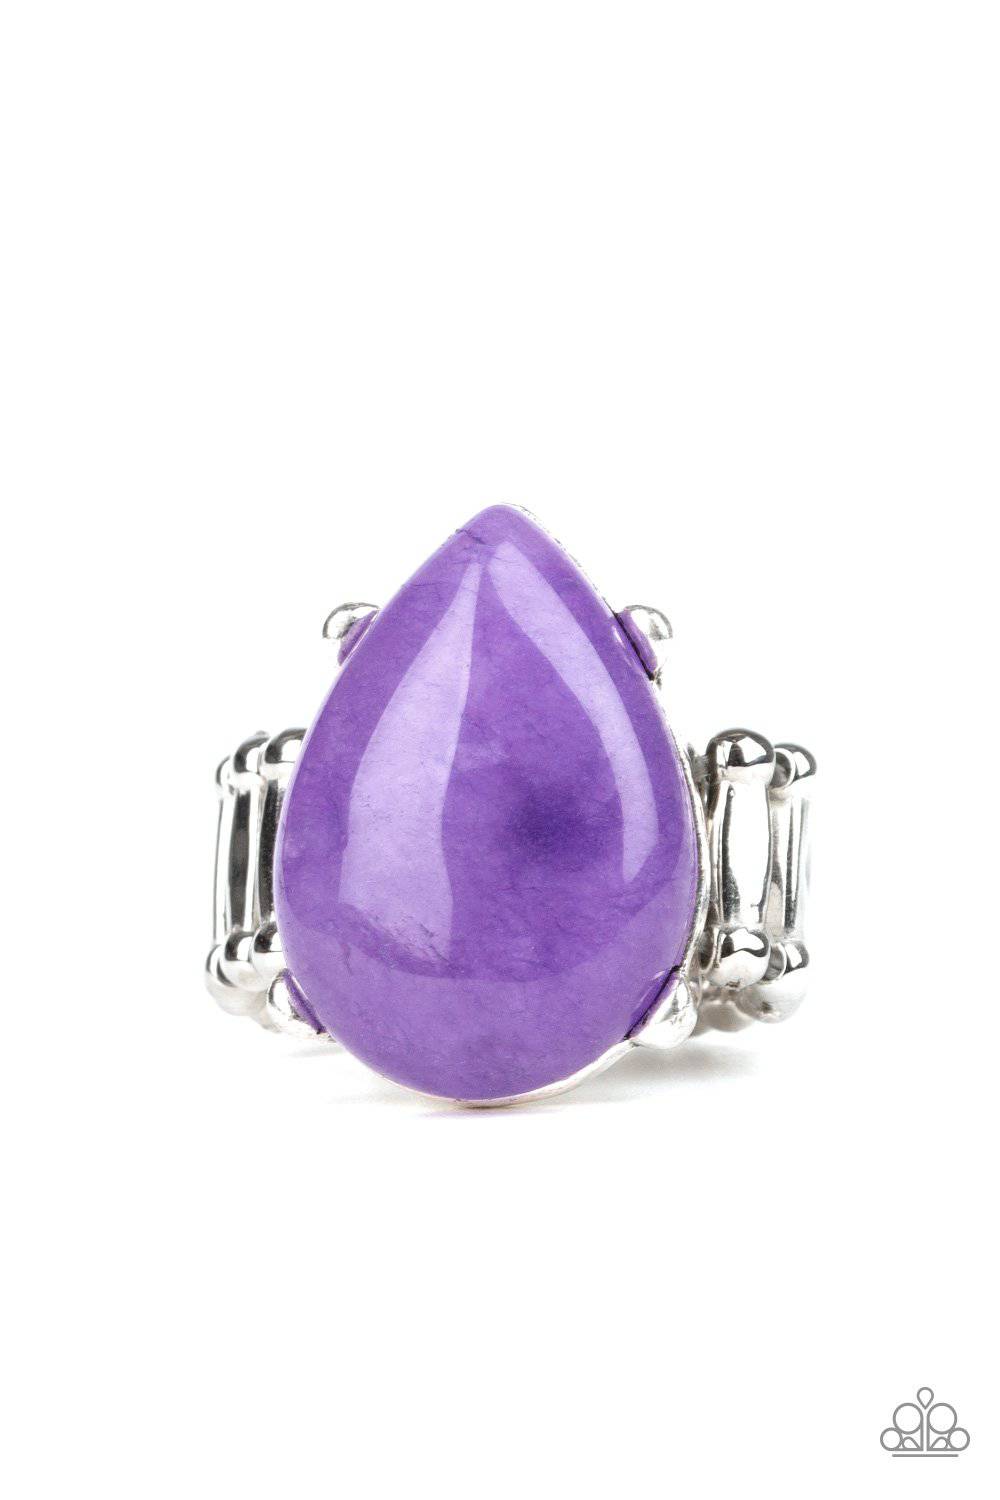 Mojave Minerals - Purple Stone Ring - Paparazzi Accessories - GlaMarous Titi Jewels